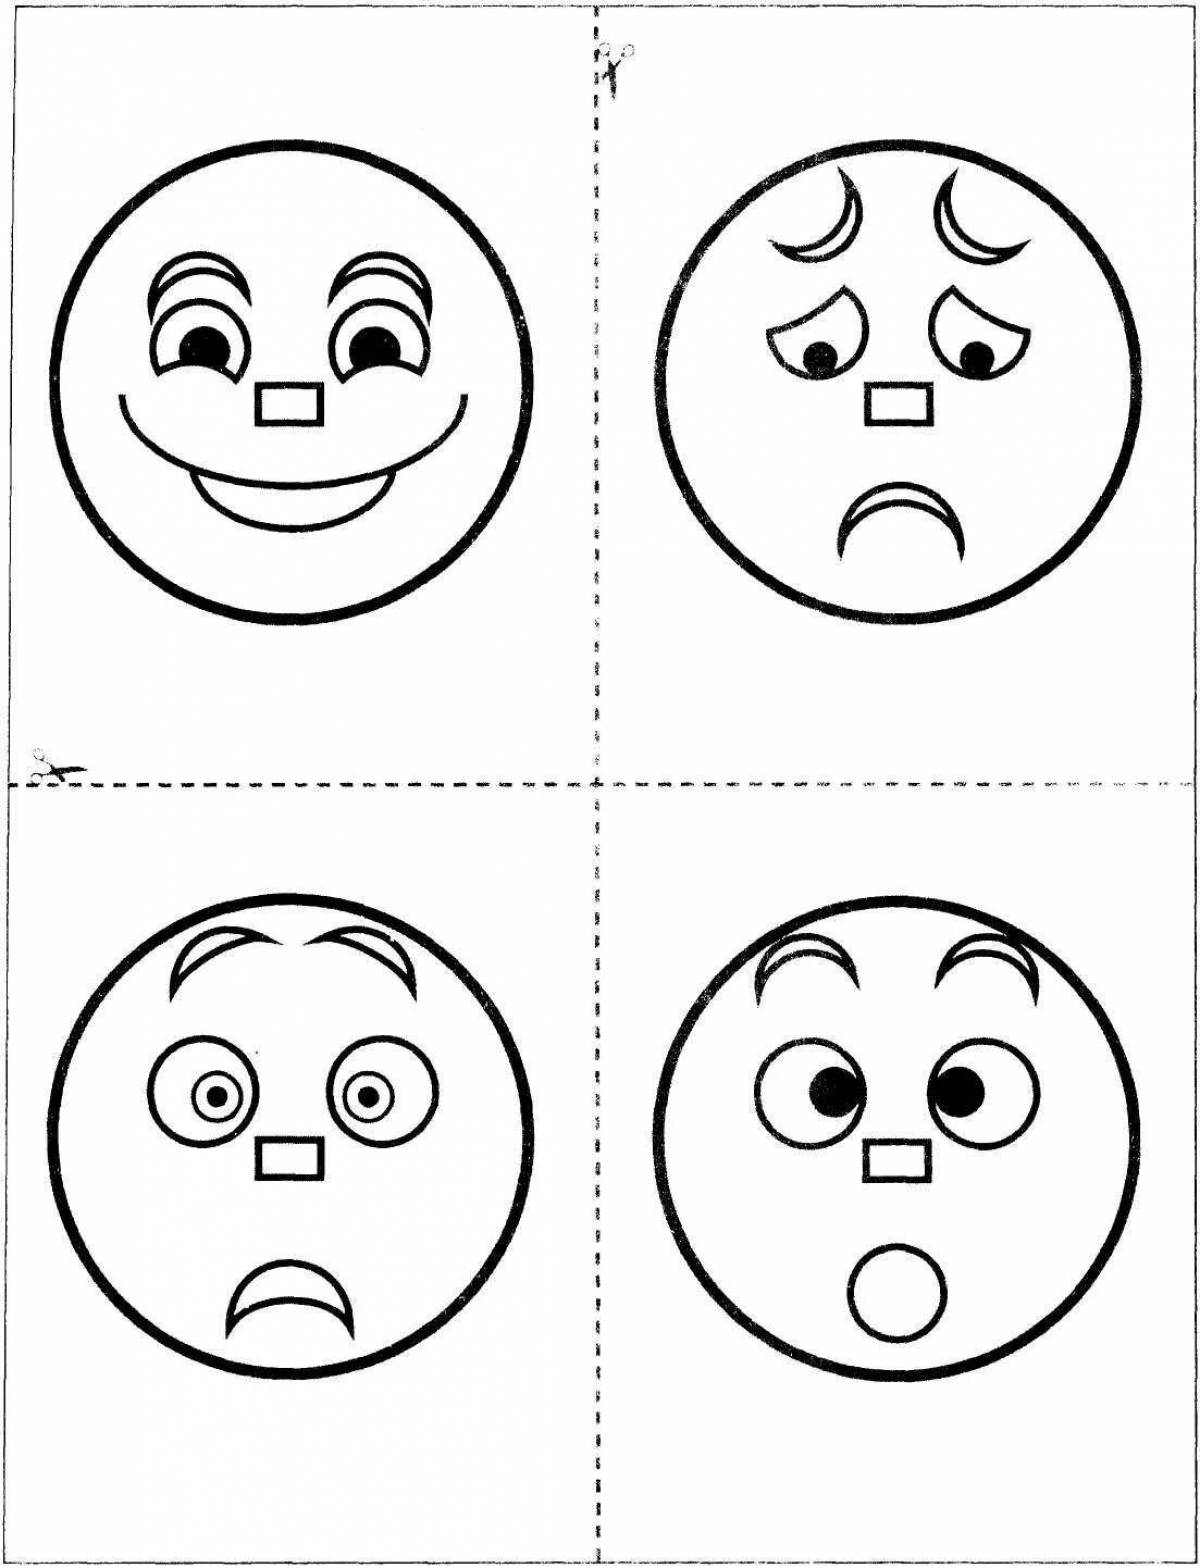 Coloring page of a boring emoticon